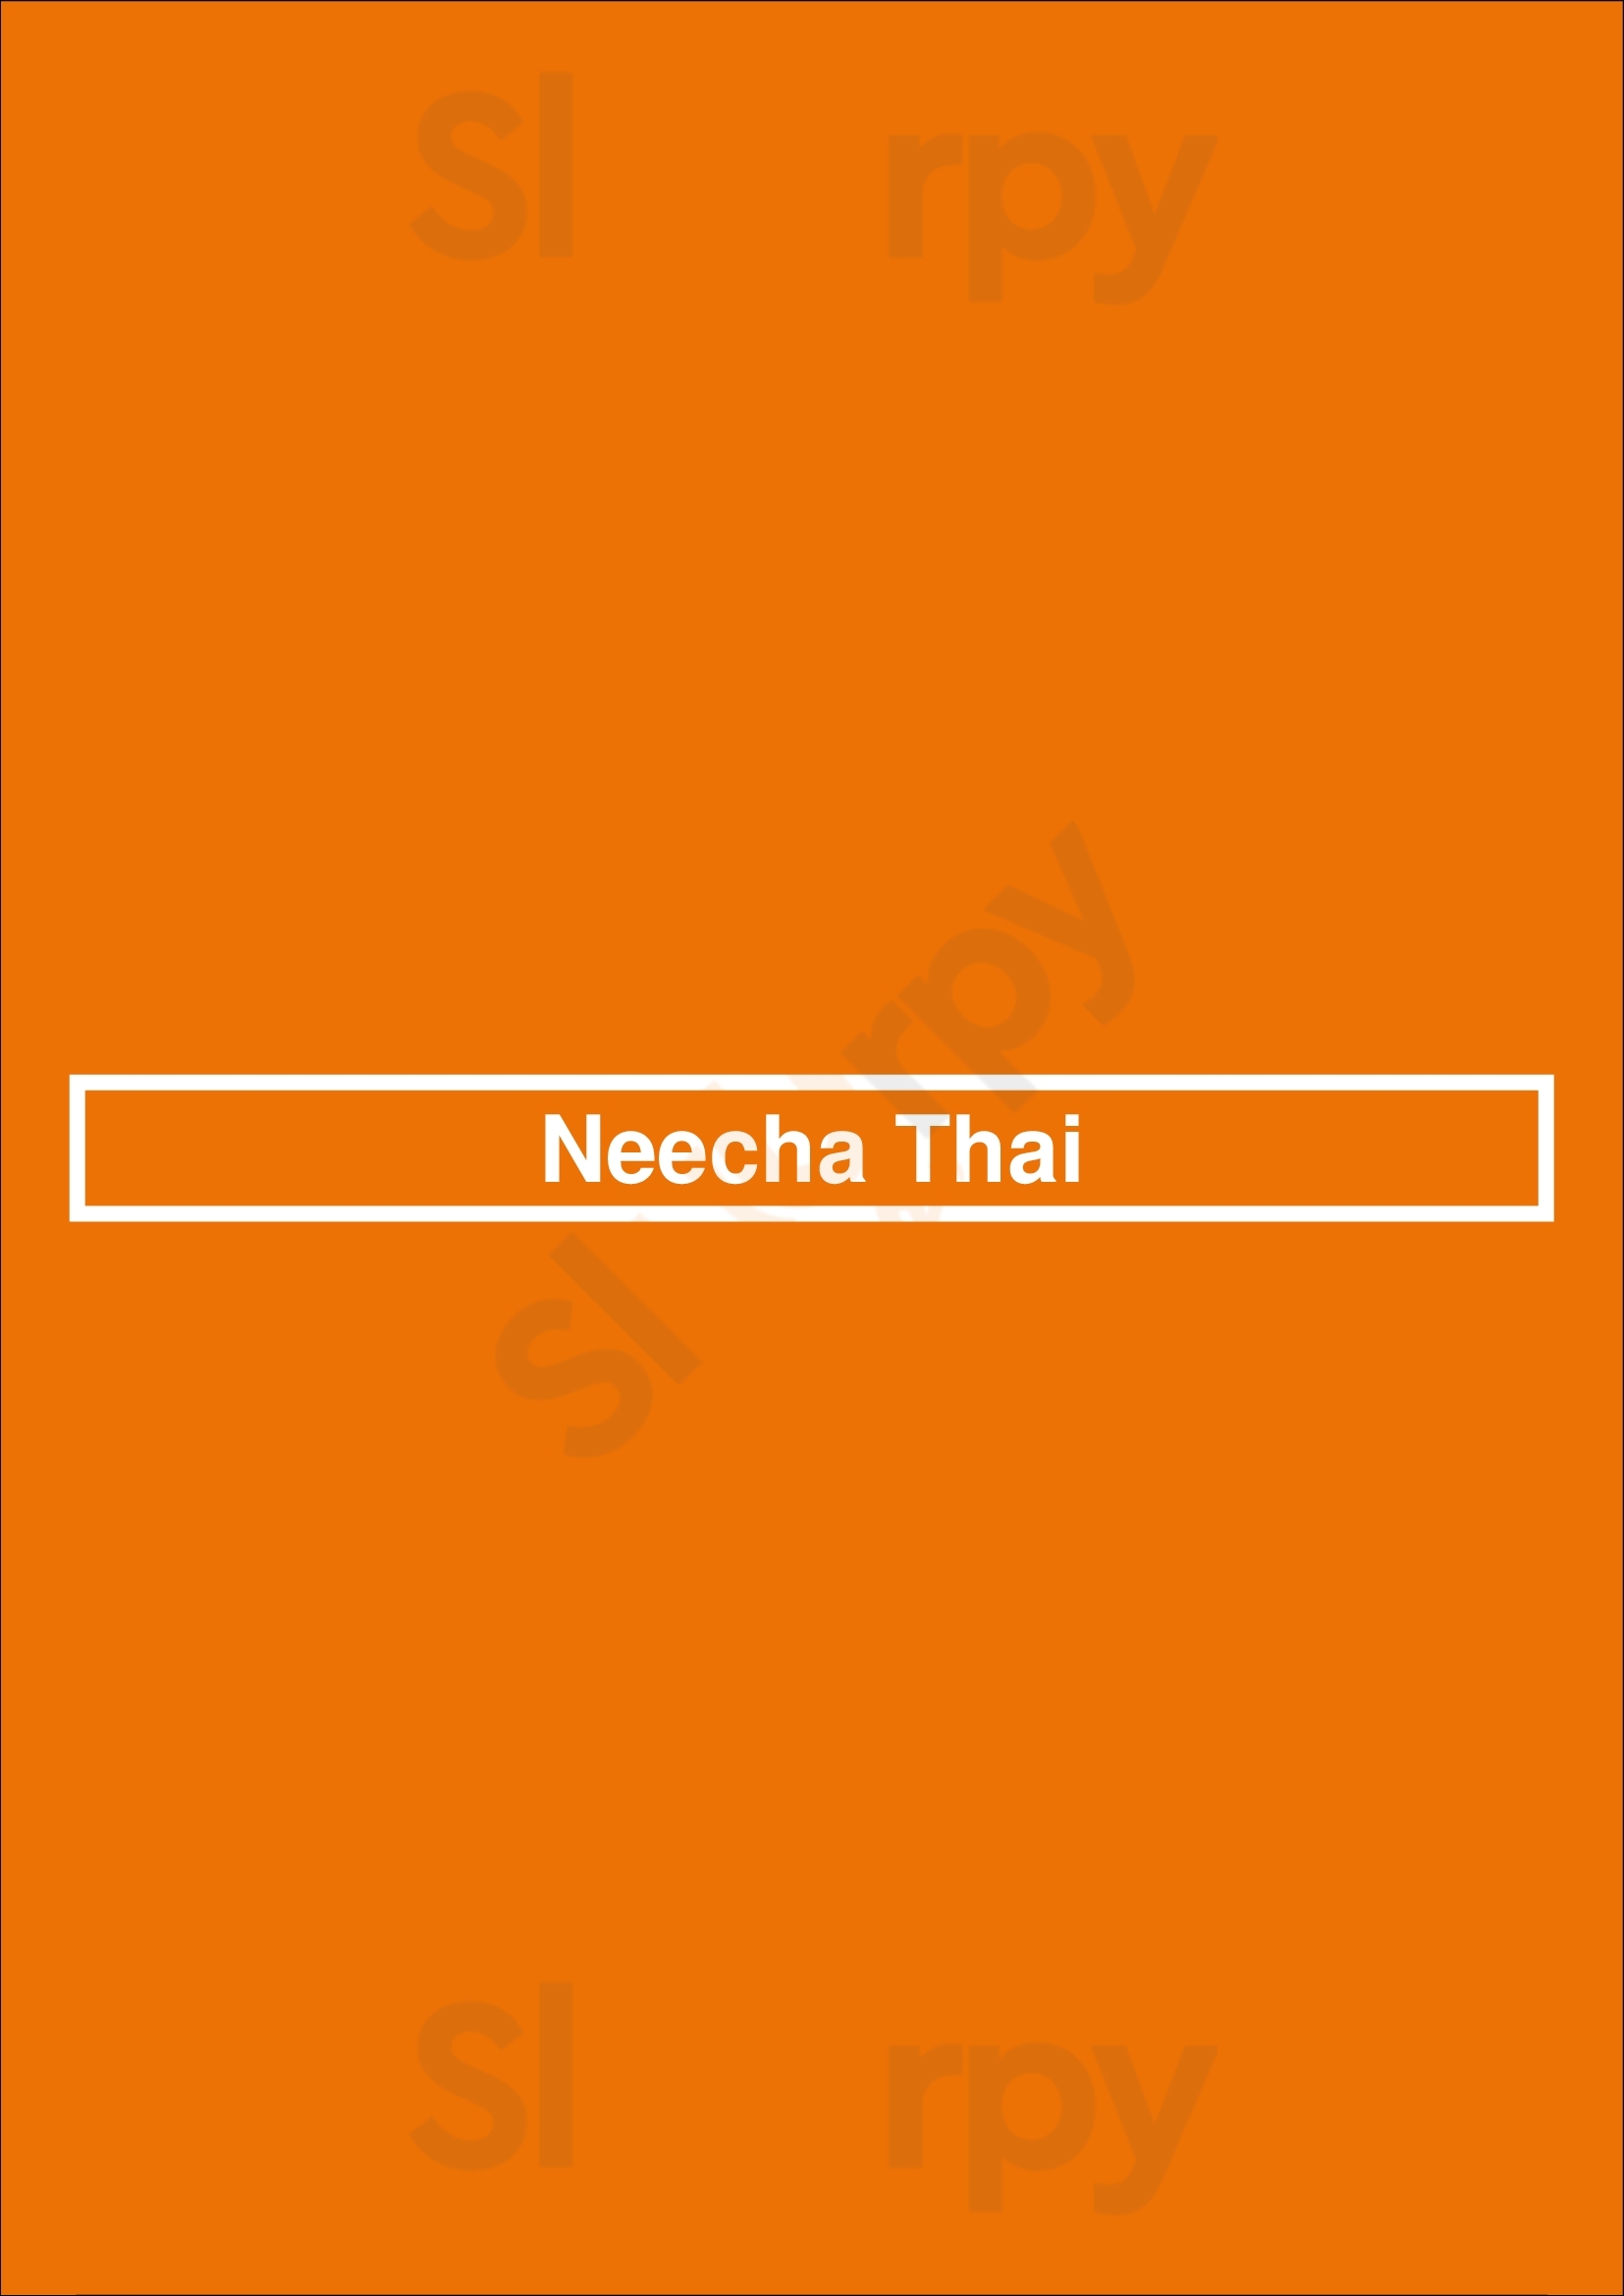 Neecha Thai Oakland Menu - 1